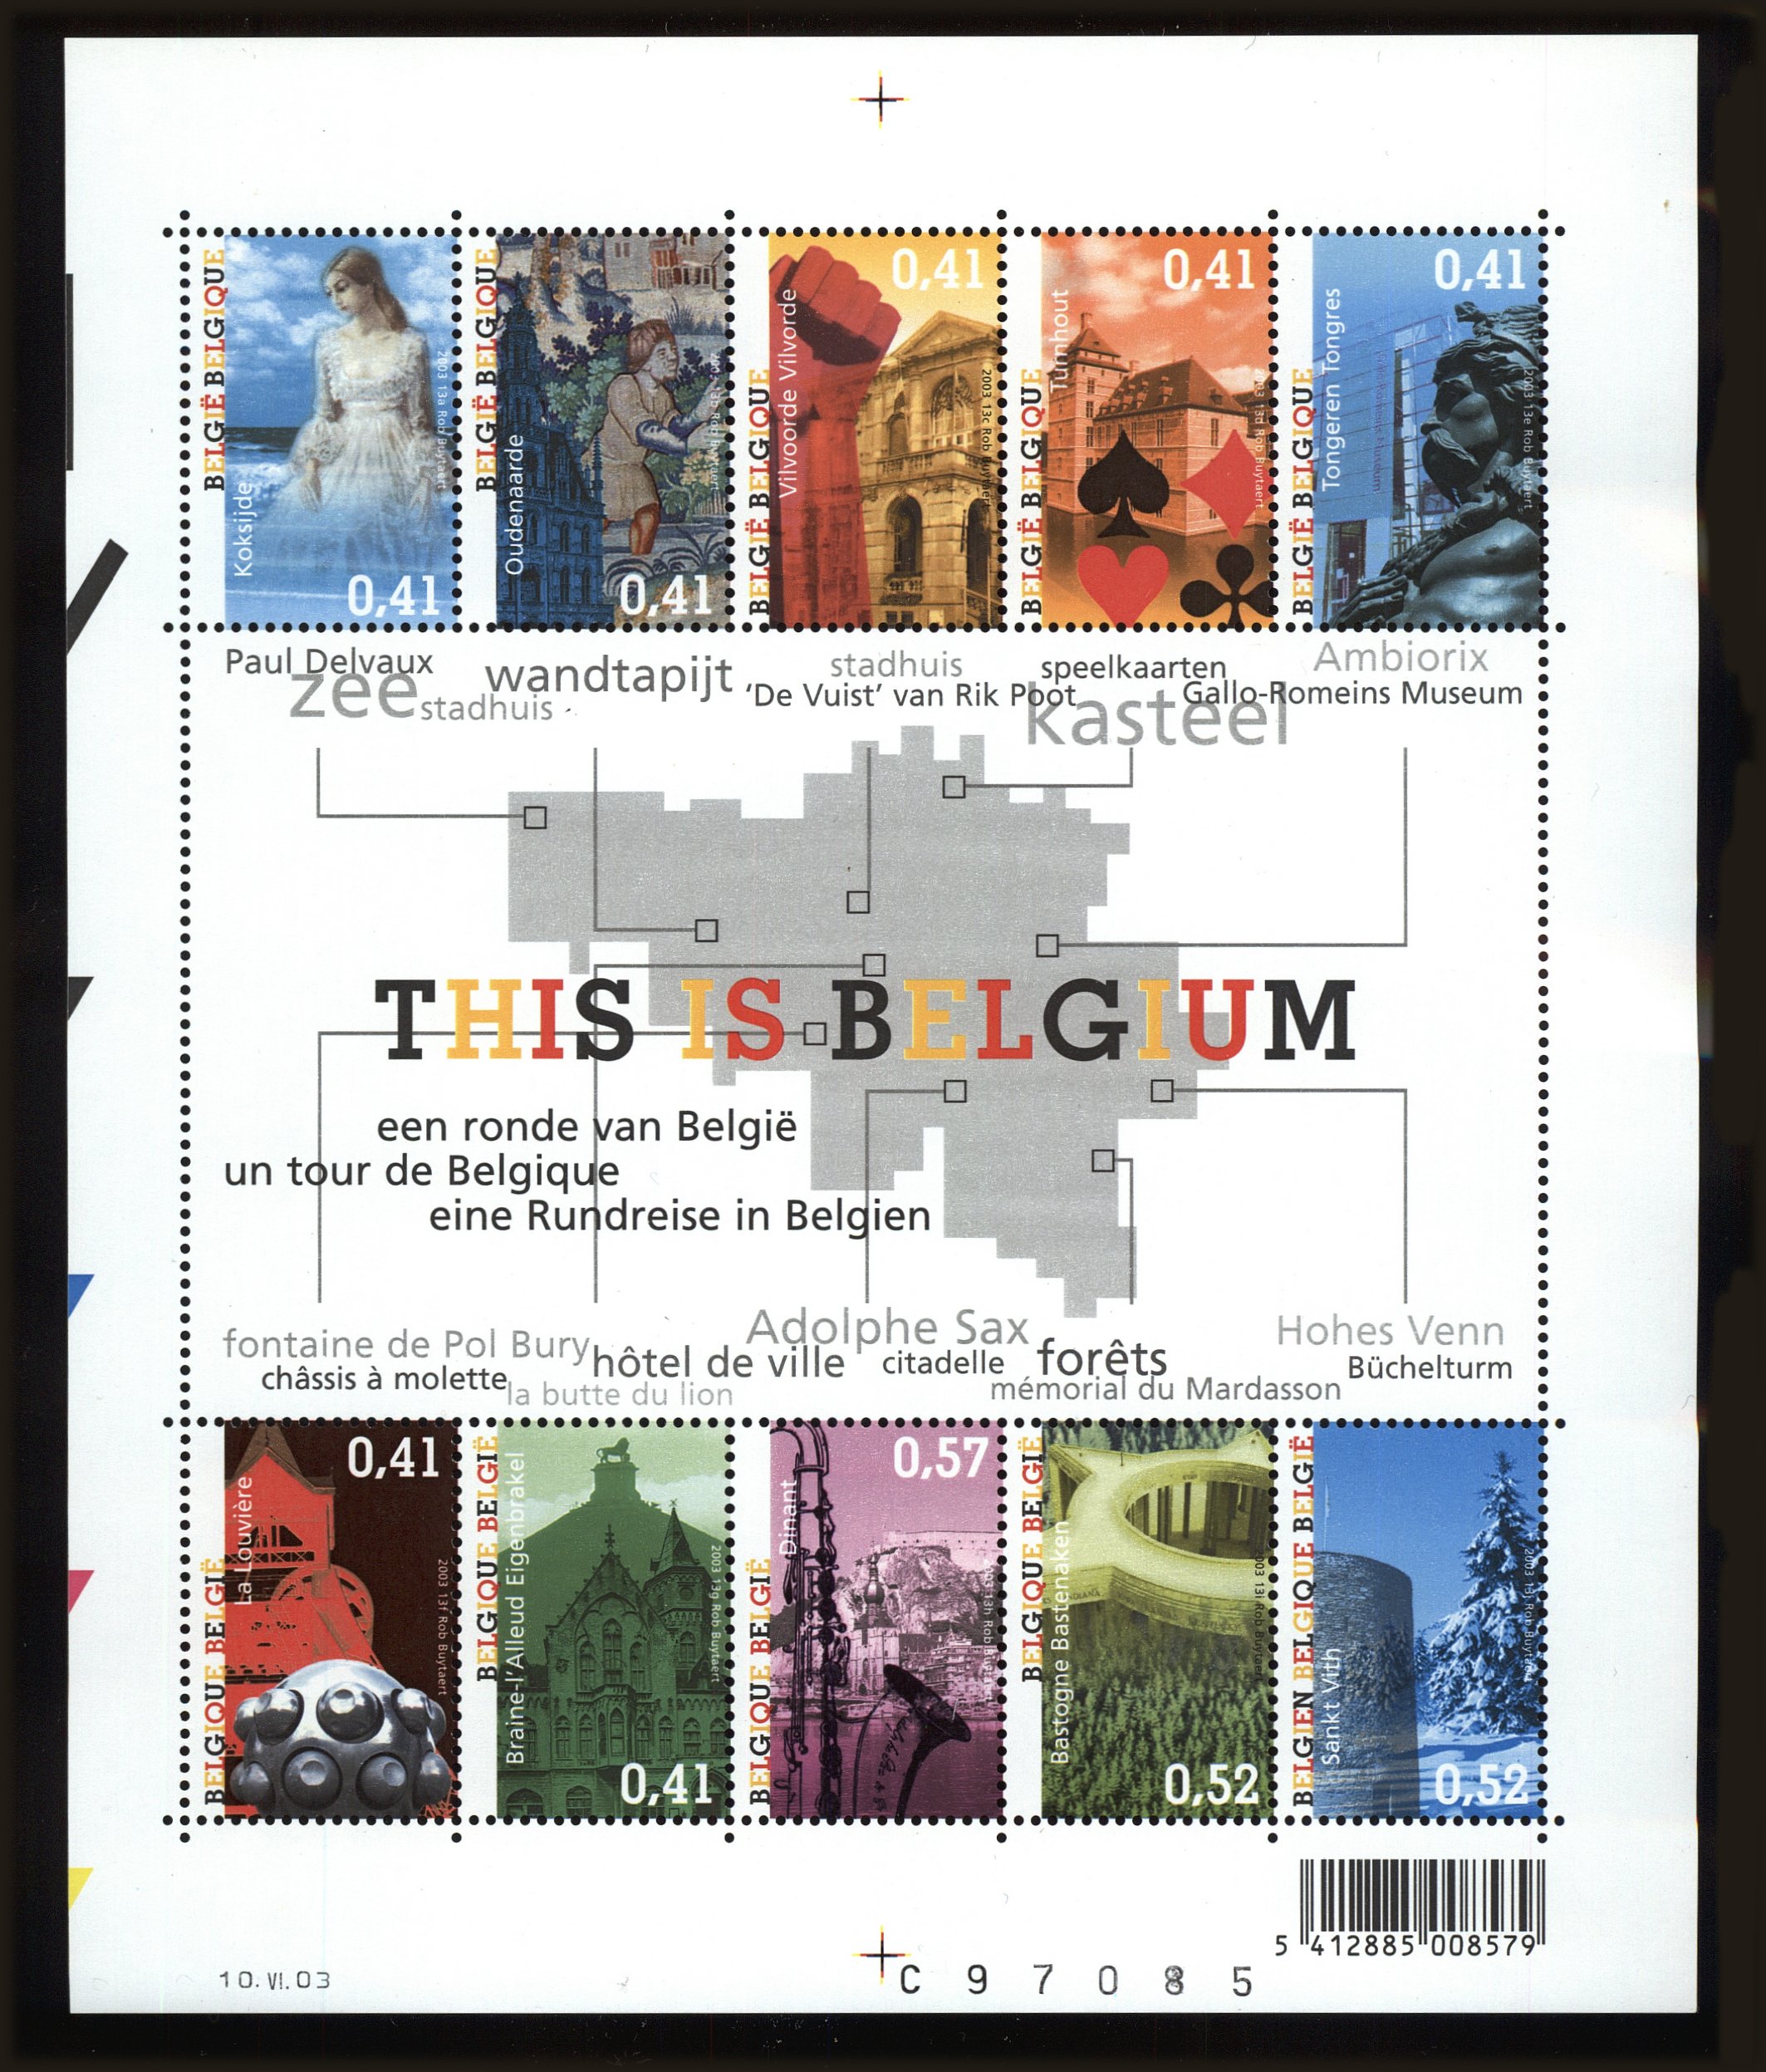 Front view of Belgium 1962 collectors stamp